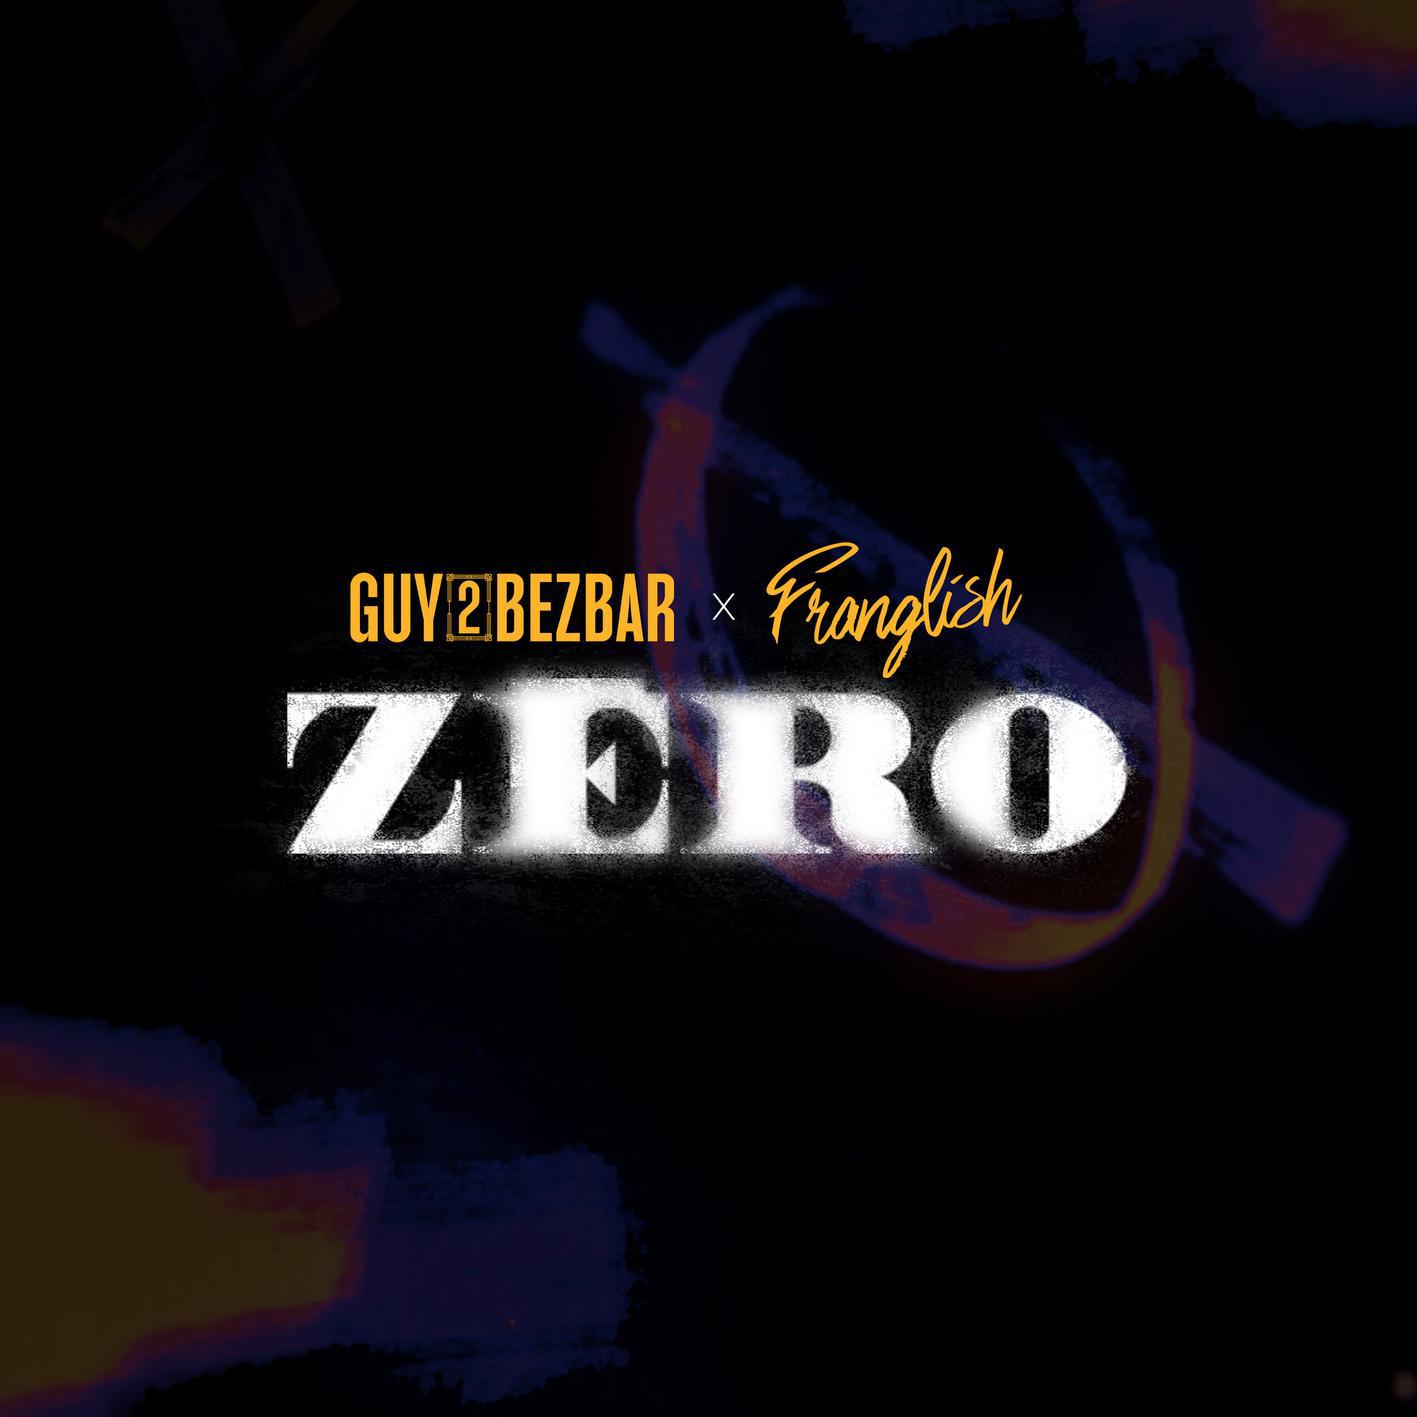 Guy2bezbar - ZERO